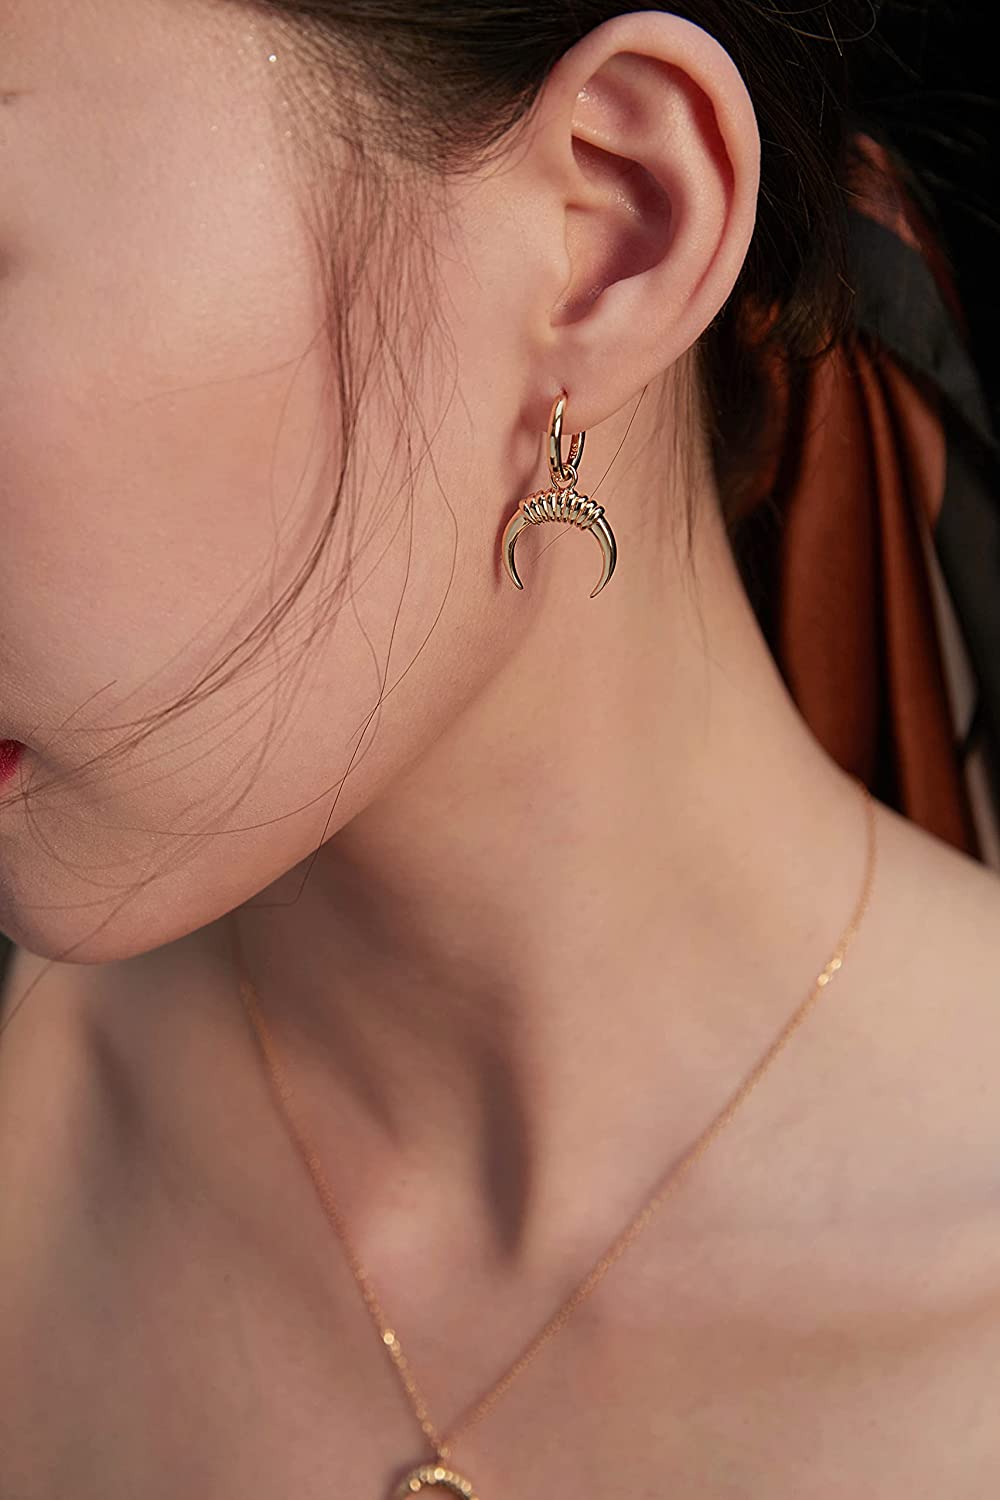 Vadmans Earrings for Women-14K Gold Plated Moon Earrings Cute Crescent Dangle Drop Earrings for Women